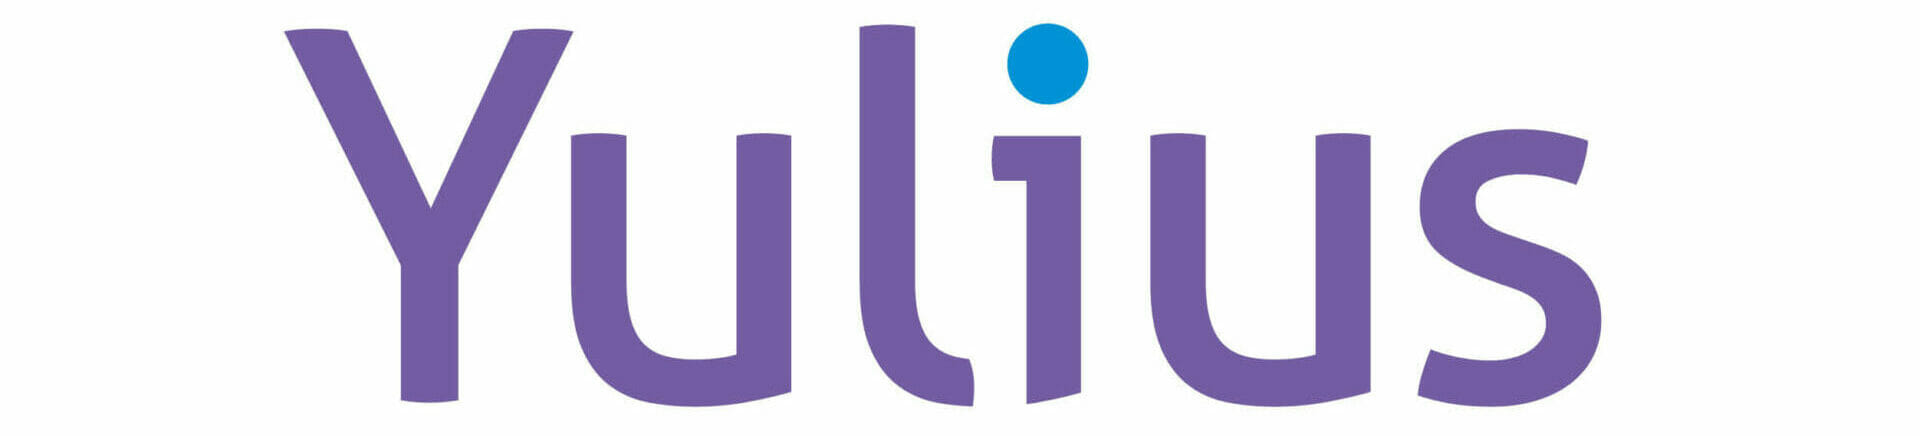 Yulius logo